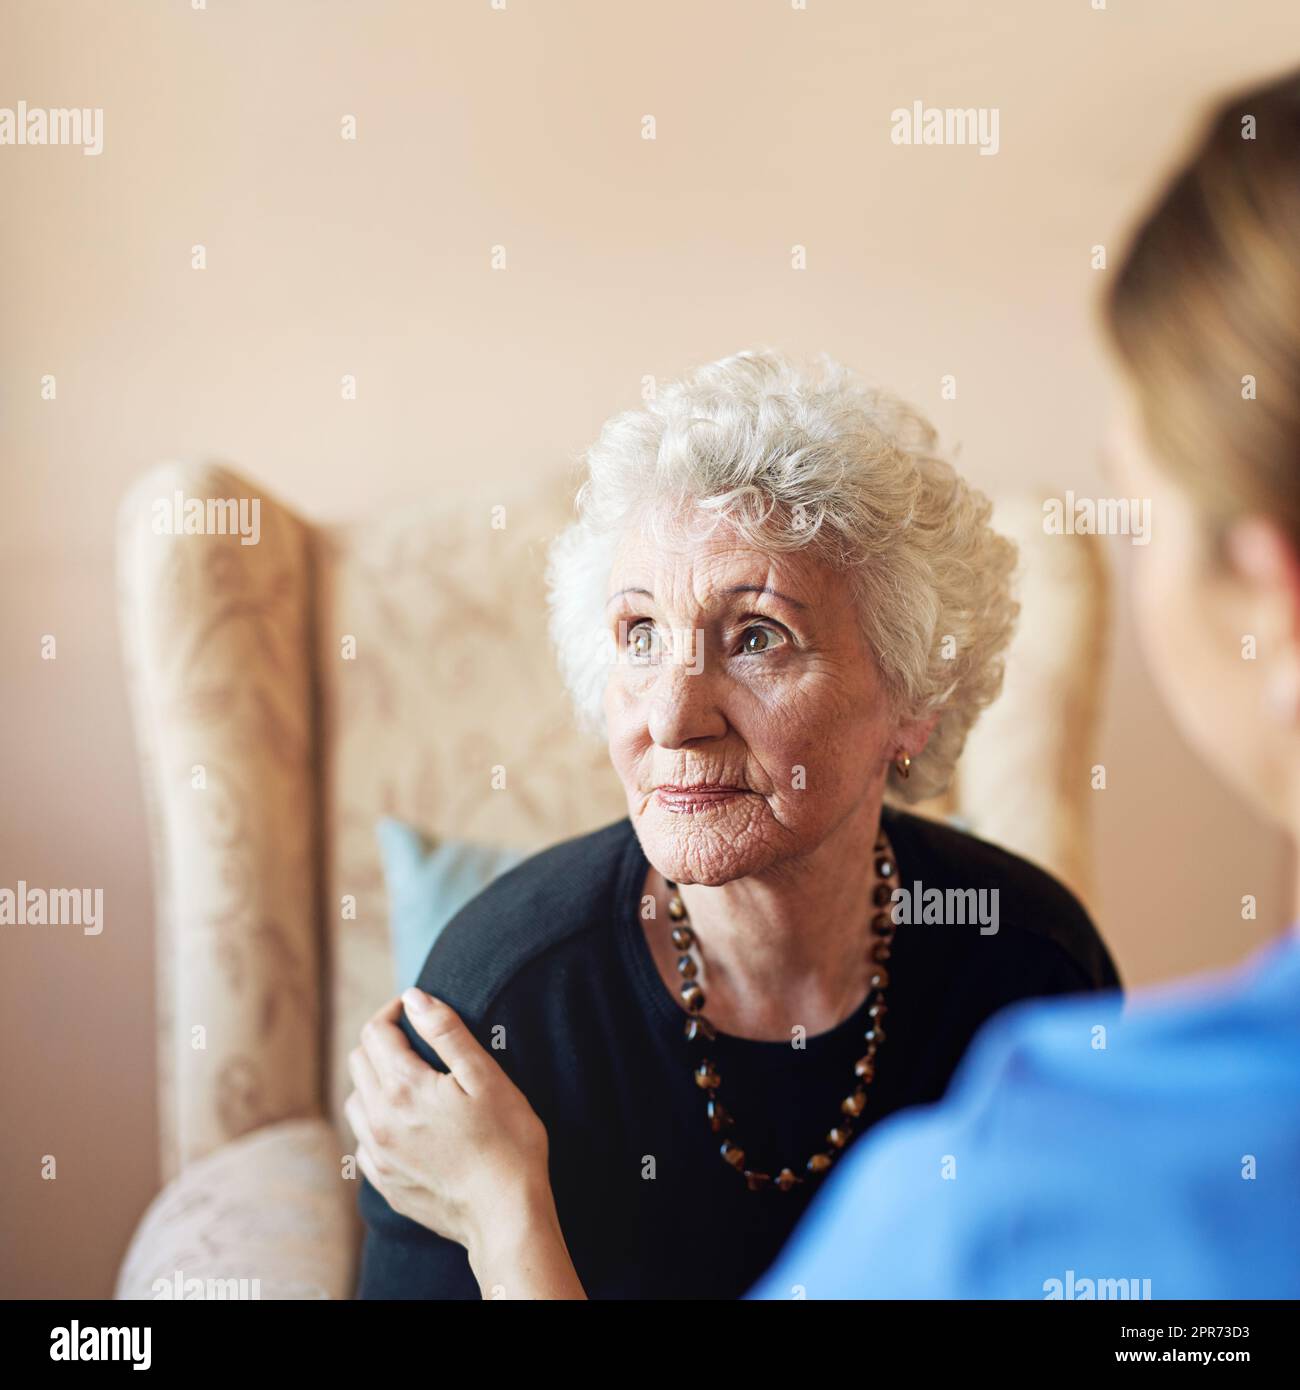 Pensieri dei giorni passati. Shot di un'infermiera che si prende cura di una donna anziana in una casa di cura. Foto Stock